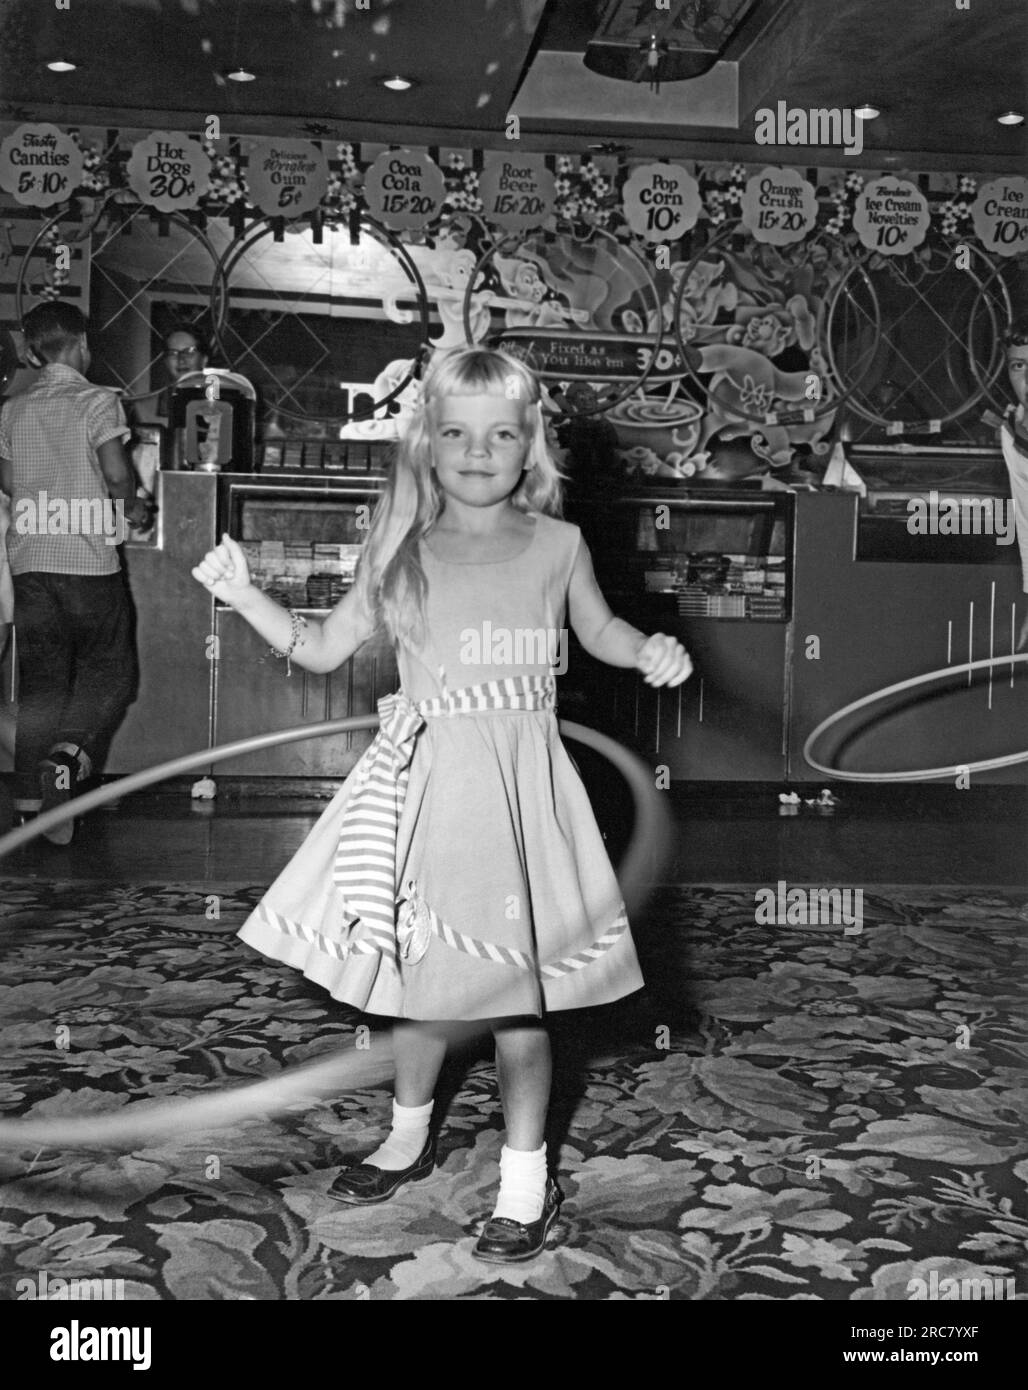 Vereinigte Staaten: 1958. Der Hula-Hoop-Wahnsinn durchkämmt das Land. Im ersten Jahr wurden in den USA über 100 Millionen Dollar verkauft. Dieser Wettbewerb fand in einer Kinolobby statt, als Popcorn einen Cent kostete und nur in einer Größe kam. Stockfoto